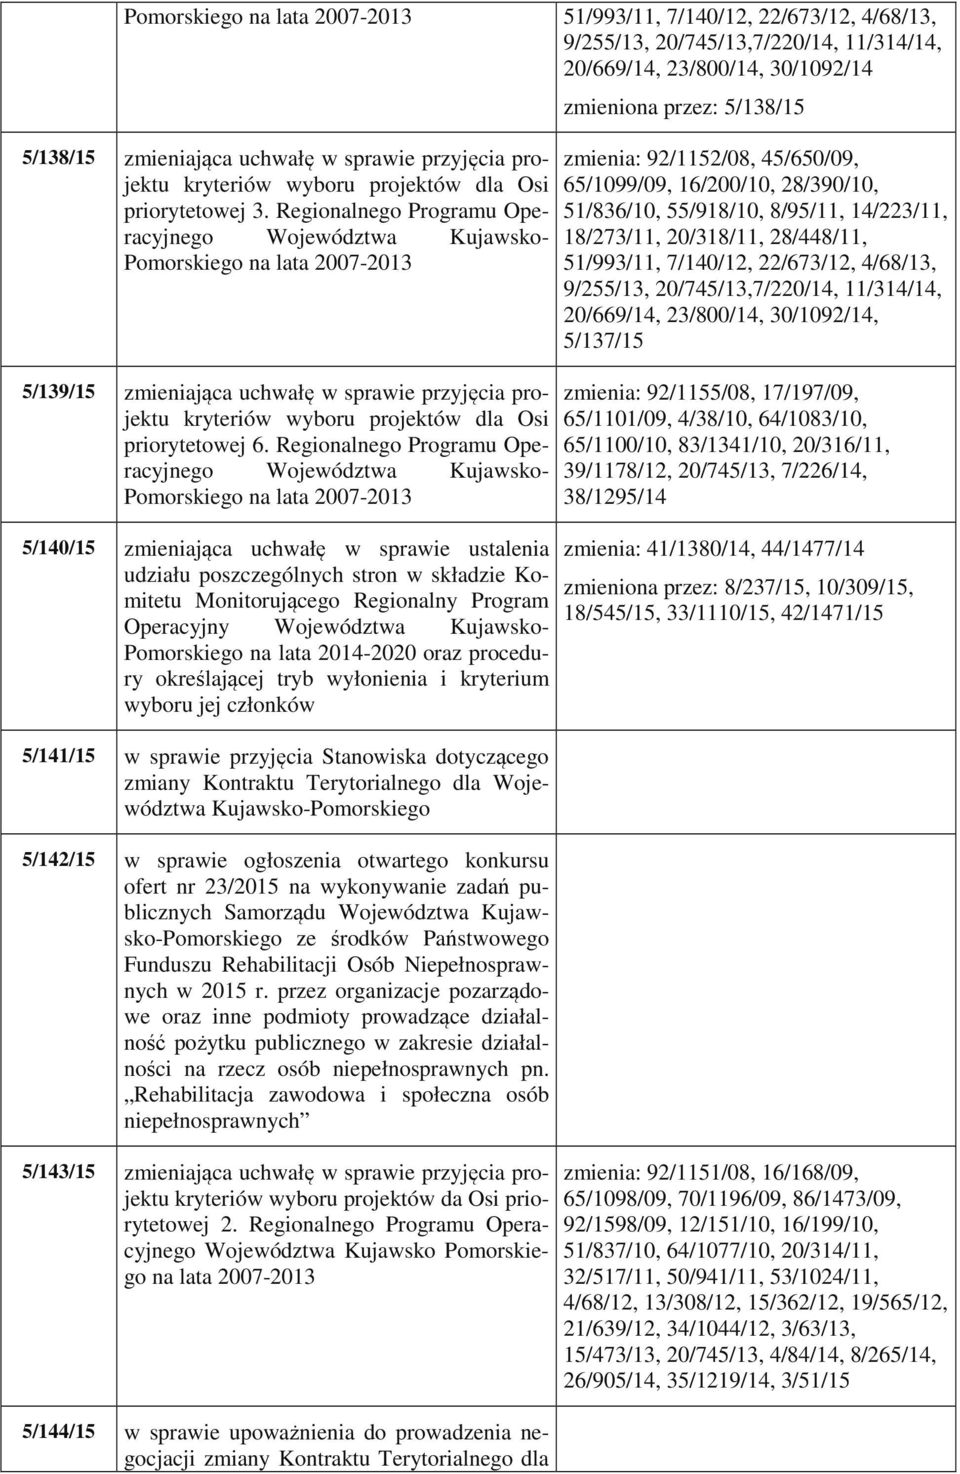 Regionalnego Programu Operacyjnego Województwa Kujawsko- Pomorskiego na lata 2007-2013 5/139/15 zmieniająca uchwałę w sprawie przyjęcia projektu kryteriów wyboru projektów dla Osi priorytetowej 6.